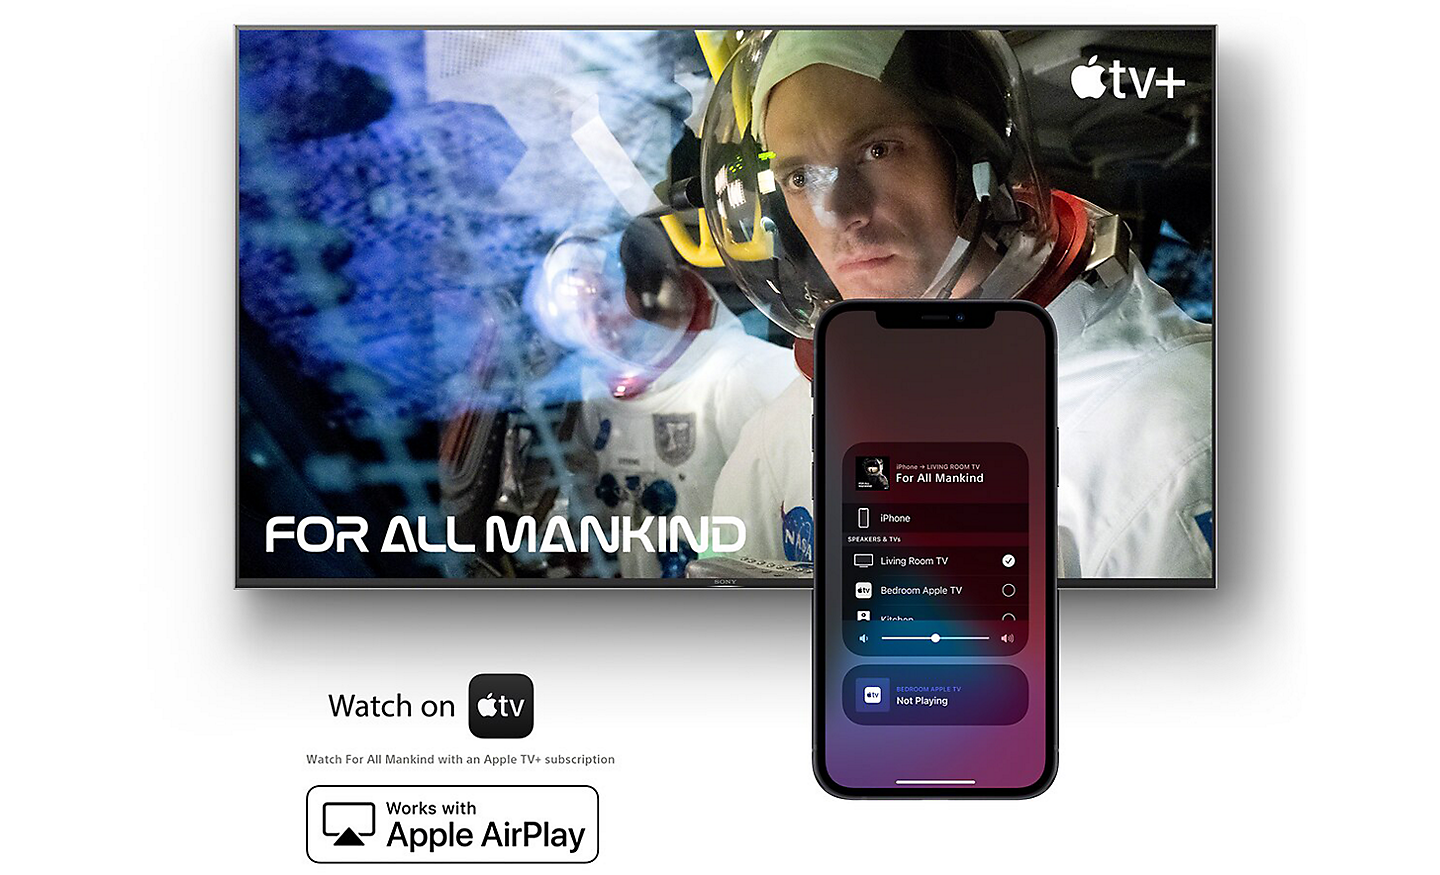 Écran affichant Pour toute l’humanité sur Apple TV avec un téléphone intelligent en avant, et les logos Watch on Apple TV et Works with Apple AirPlay en dessous